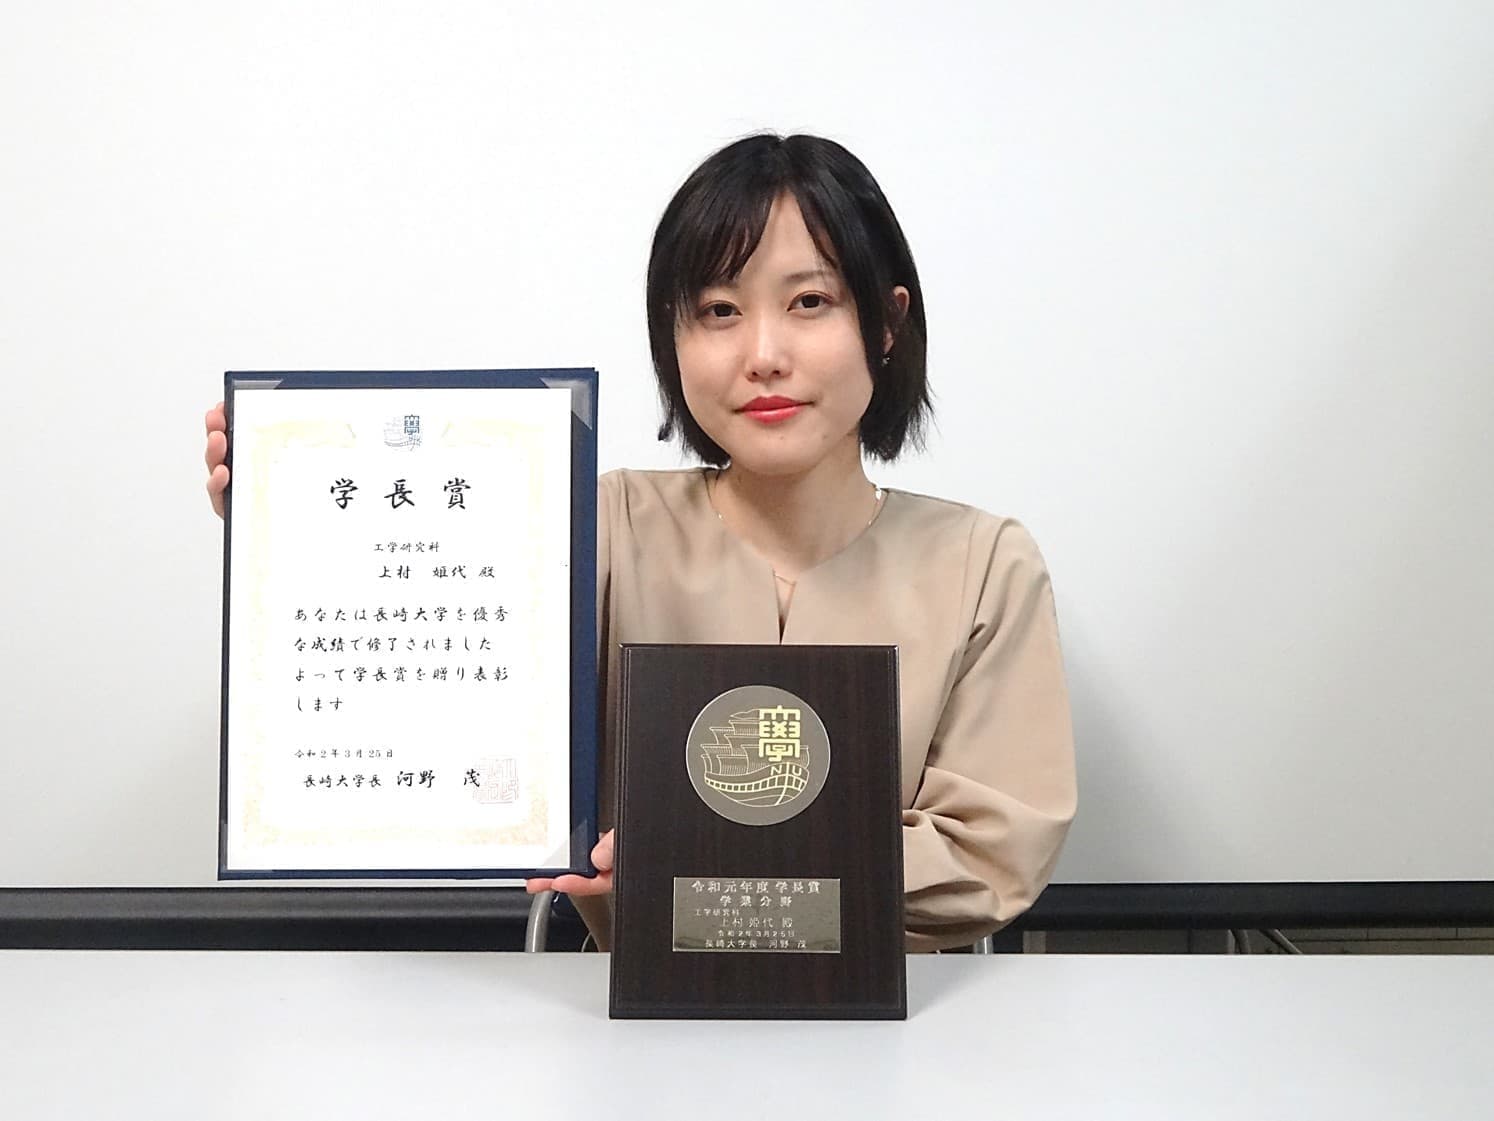 上村姫代さん(M2)が、工学研究科・総代として、長崎大学卒業証書・学位記授与式に出席しました。また、学長賞（学業分野）を受賞しました。2020/03/25